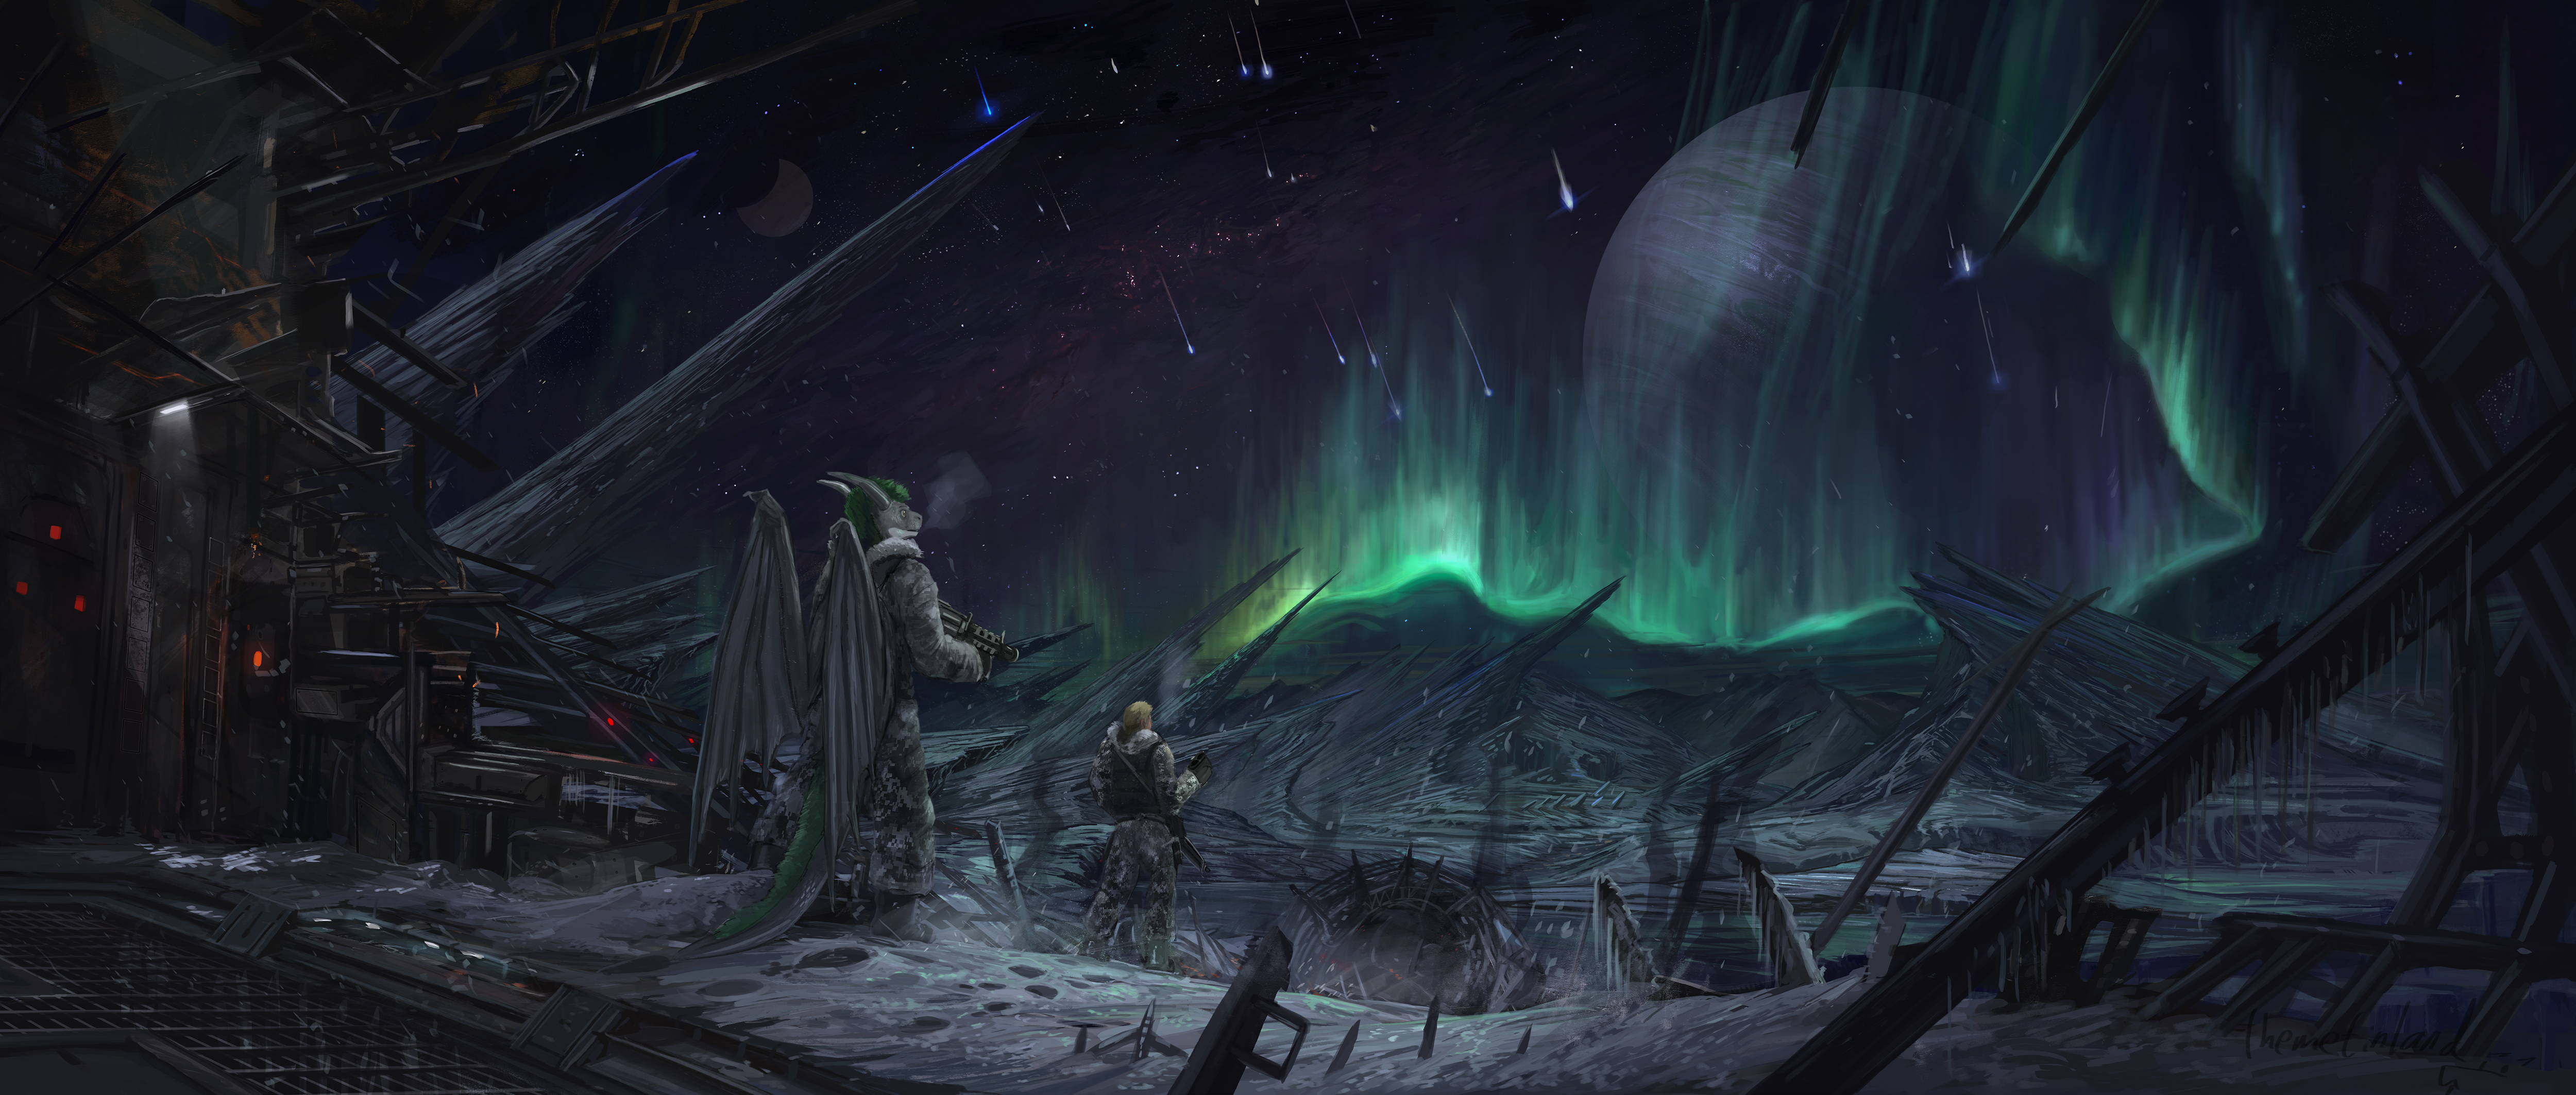 Download mobile wallpaper Landscape, Night, Aurora Borealis, Warrior, Creature, Sci Fi for free.